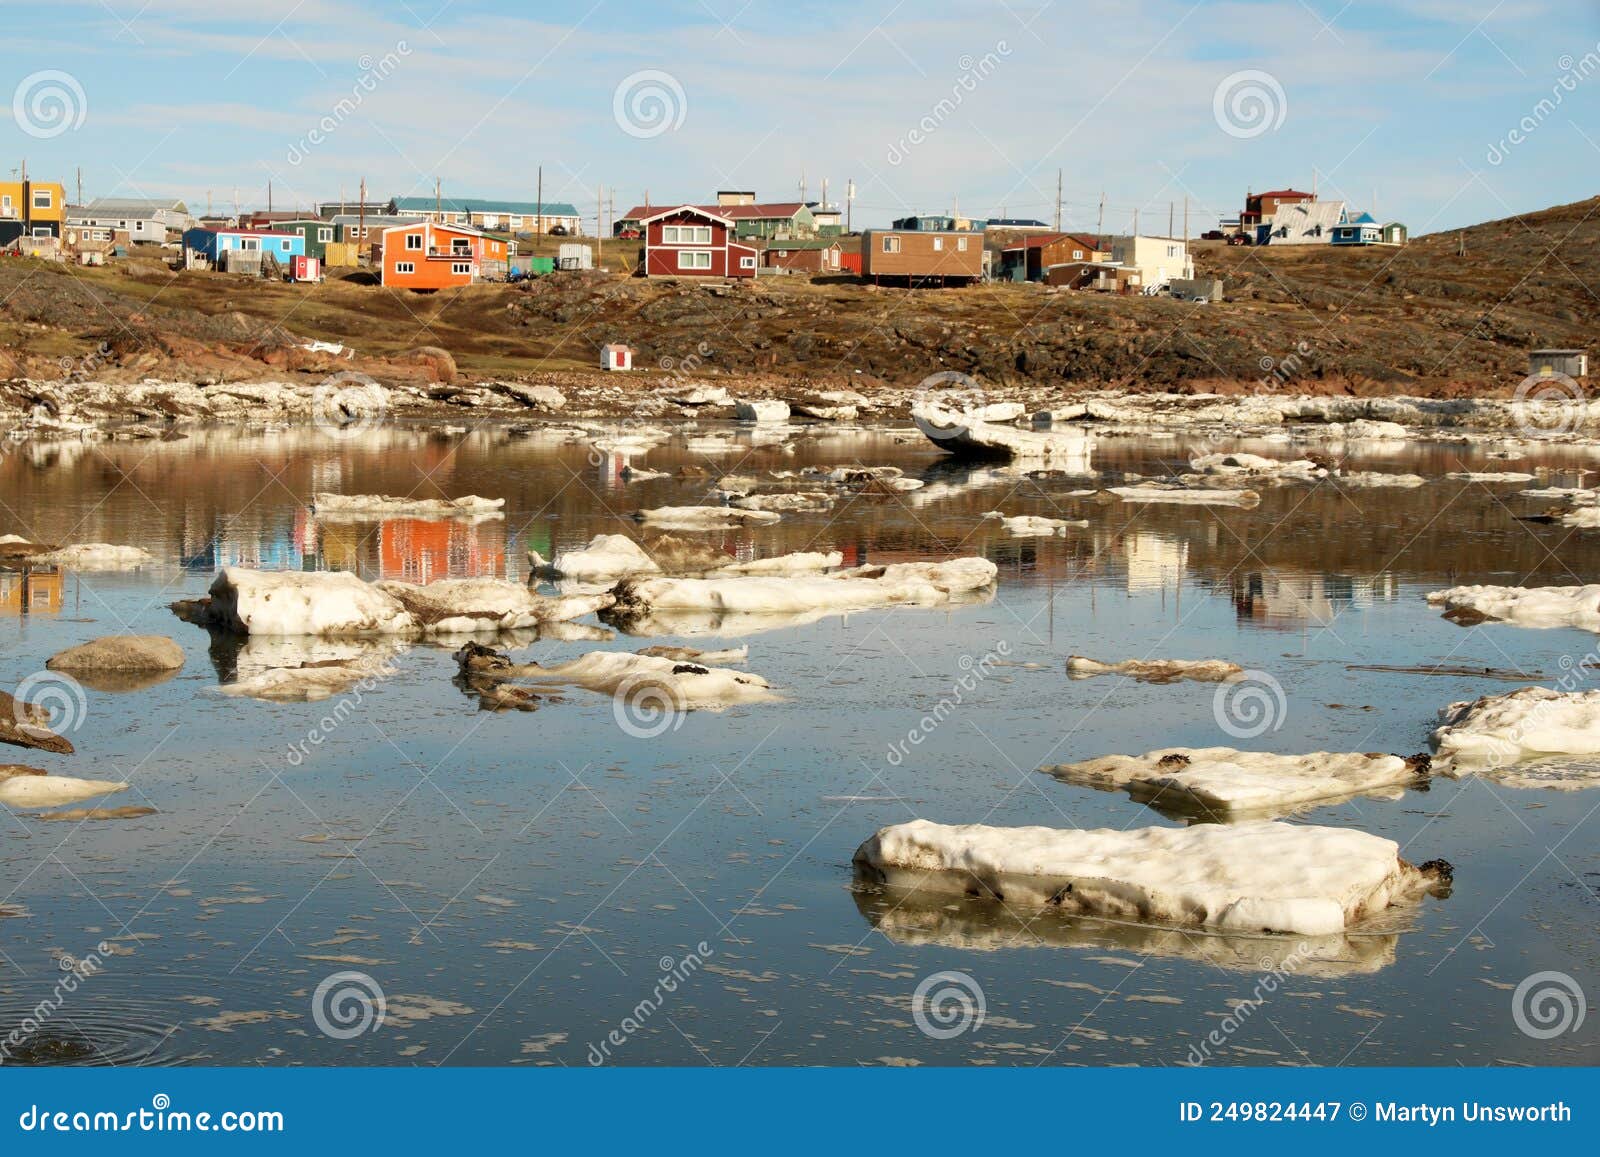 iqaluit, nunavut, canada